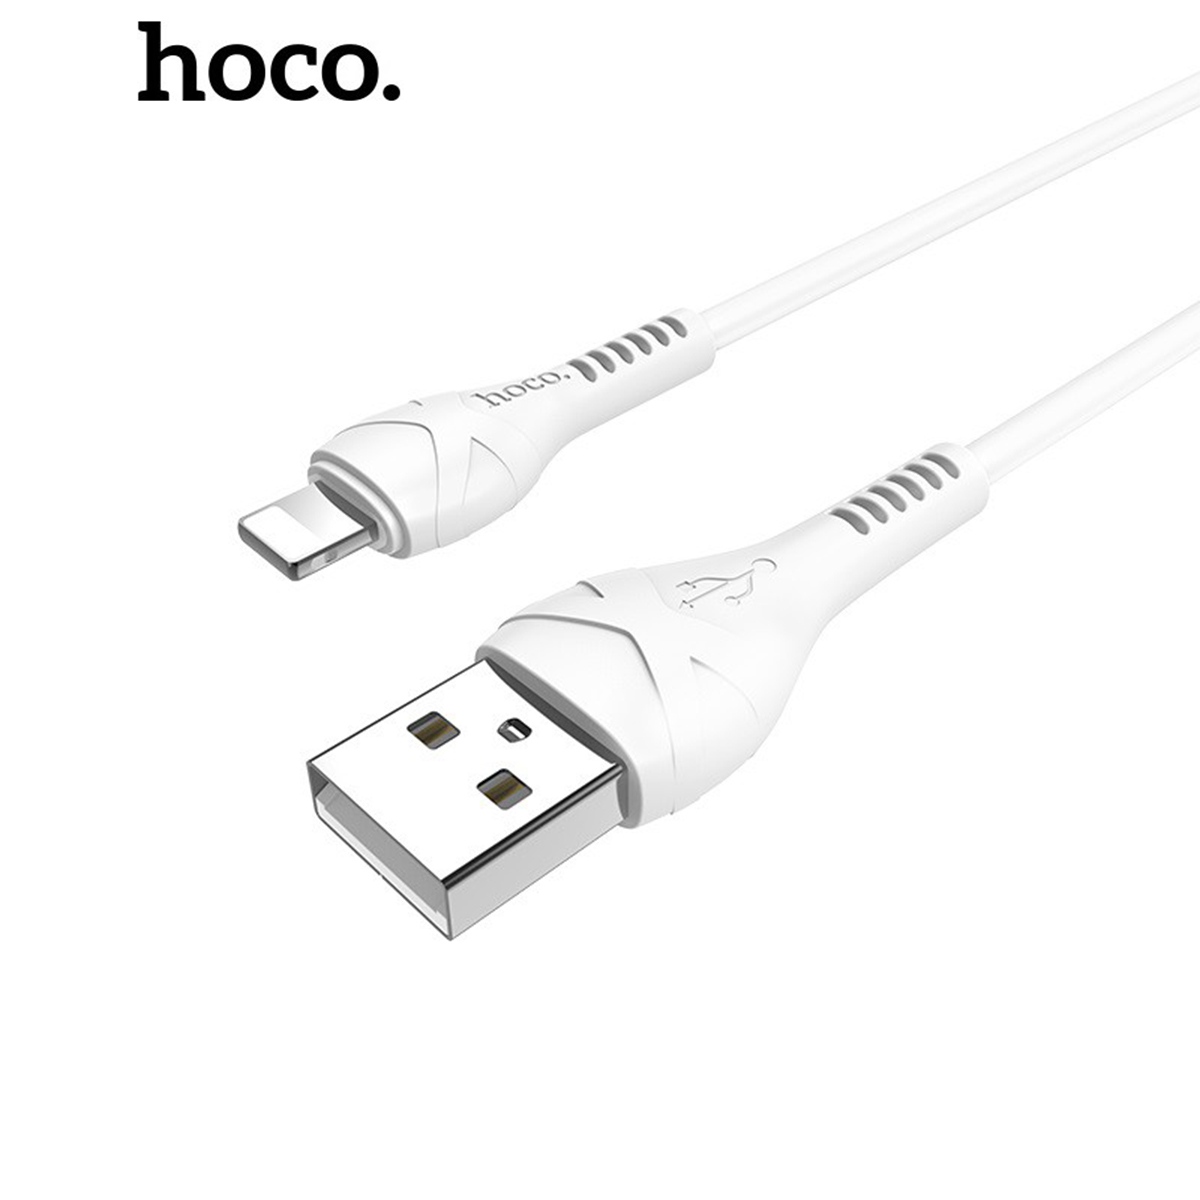 Cáp sạc nhanh Hoco X37 chống rối sạc full dòng iPhone, Android, iPad dây truyền tải dữ liệu dài 1m - Chính hãng